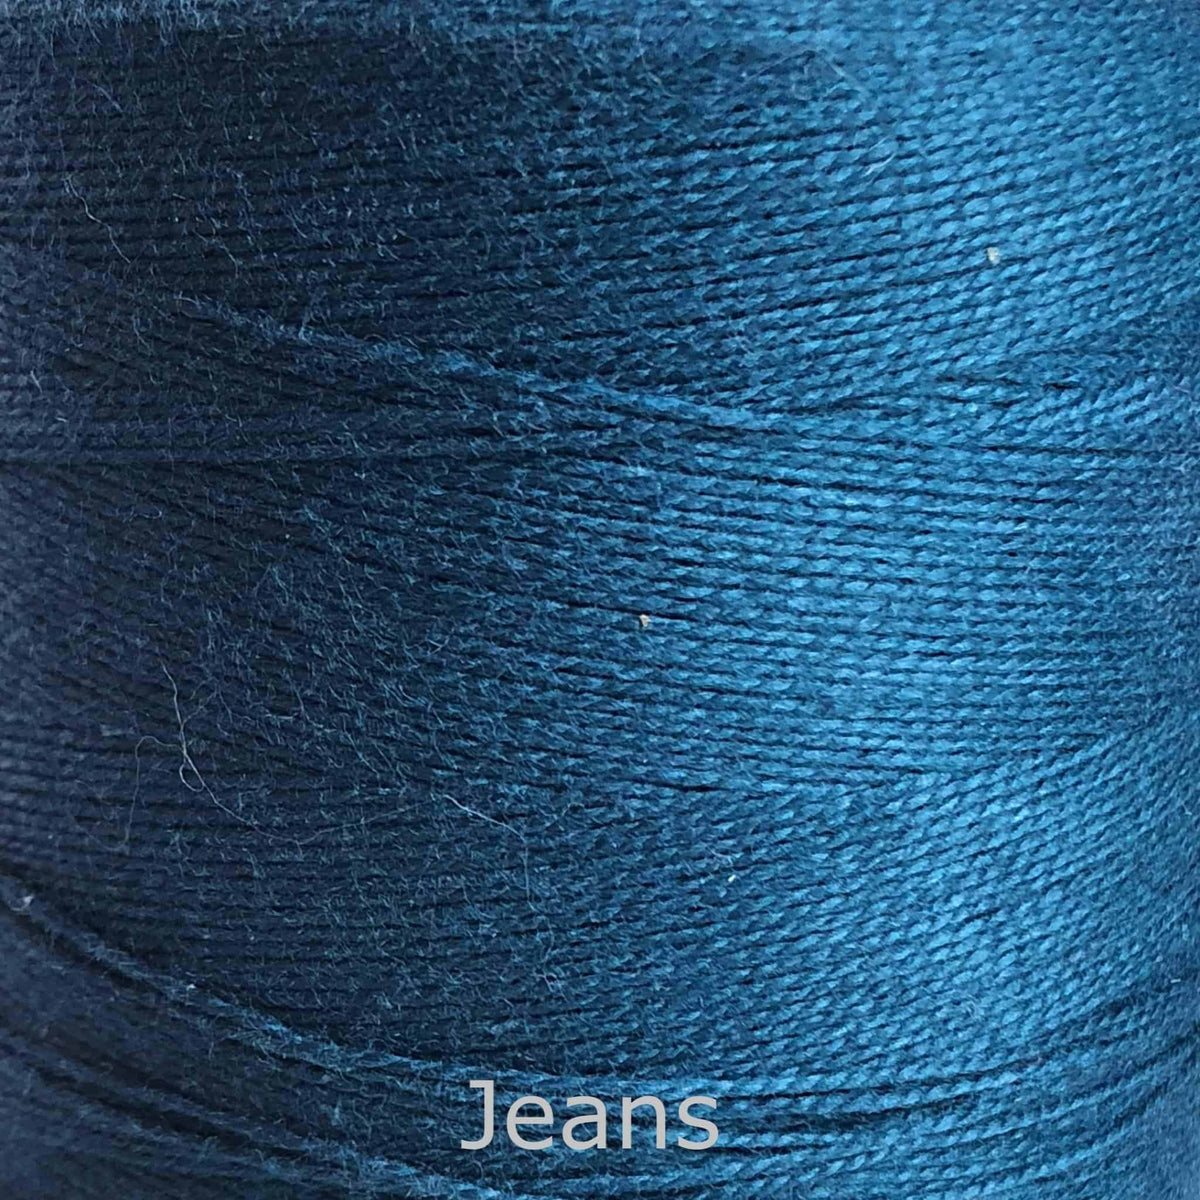 16/2 cotton weaving yarn jeans